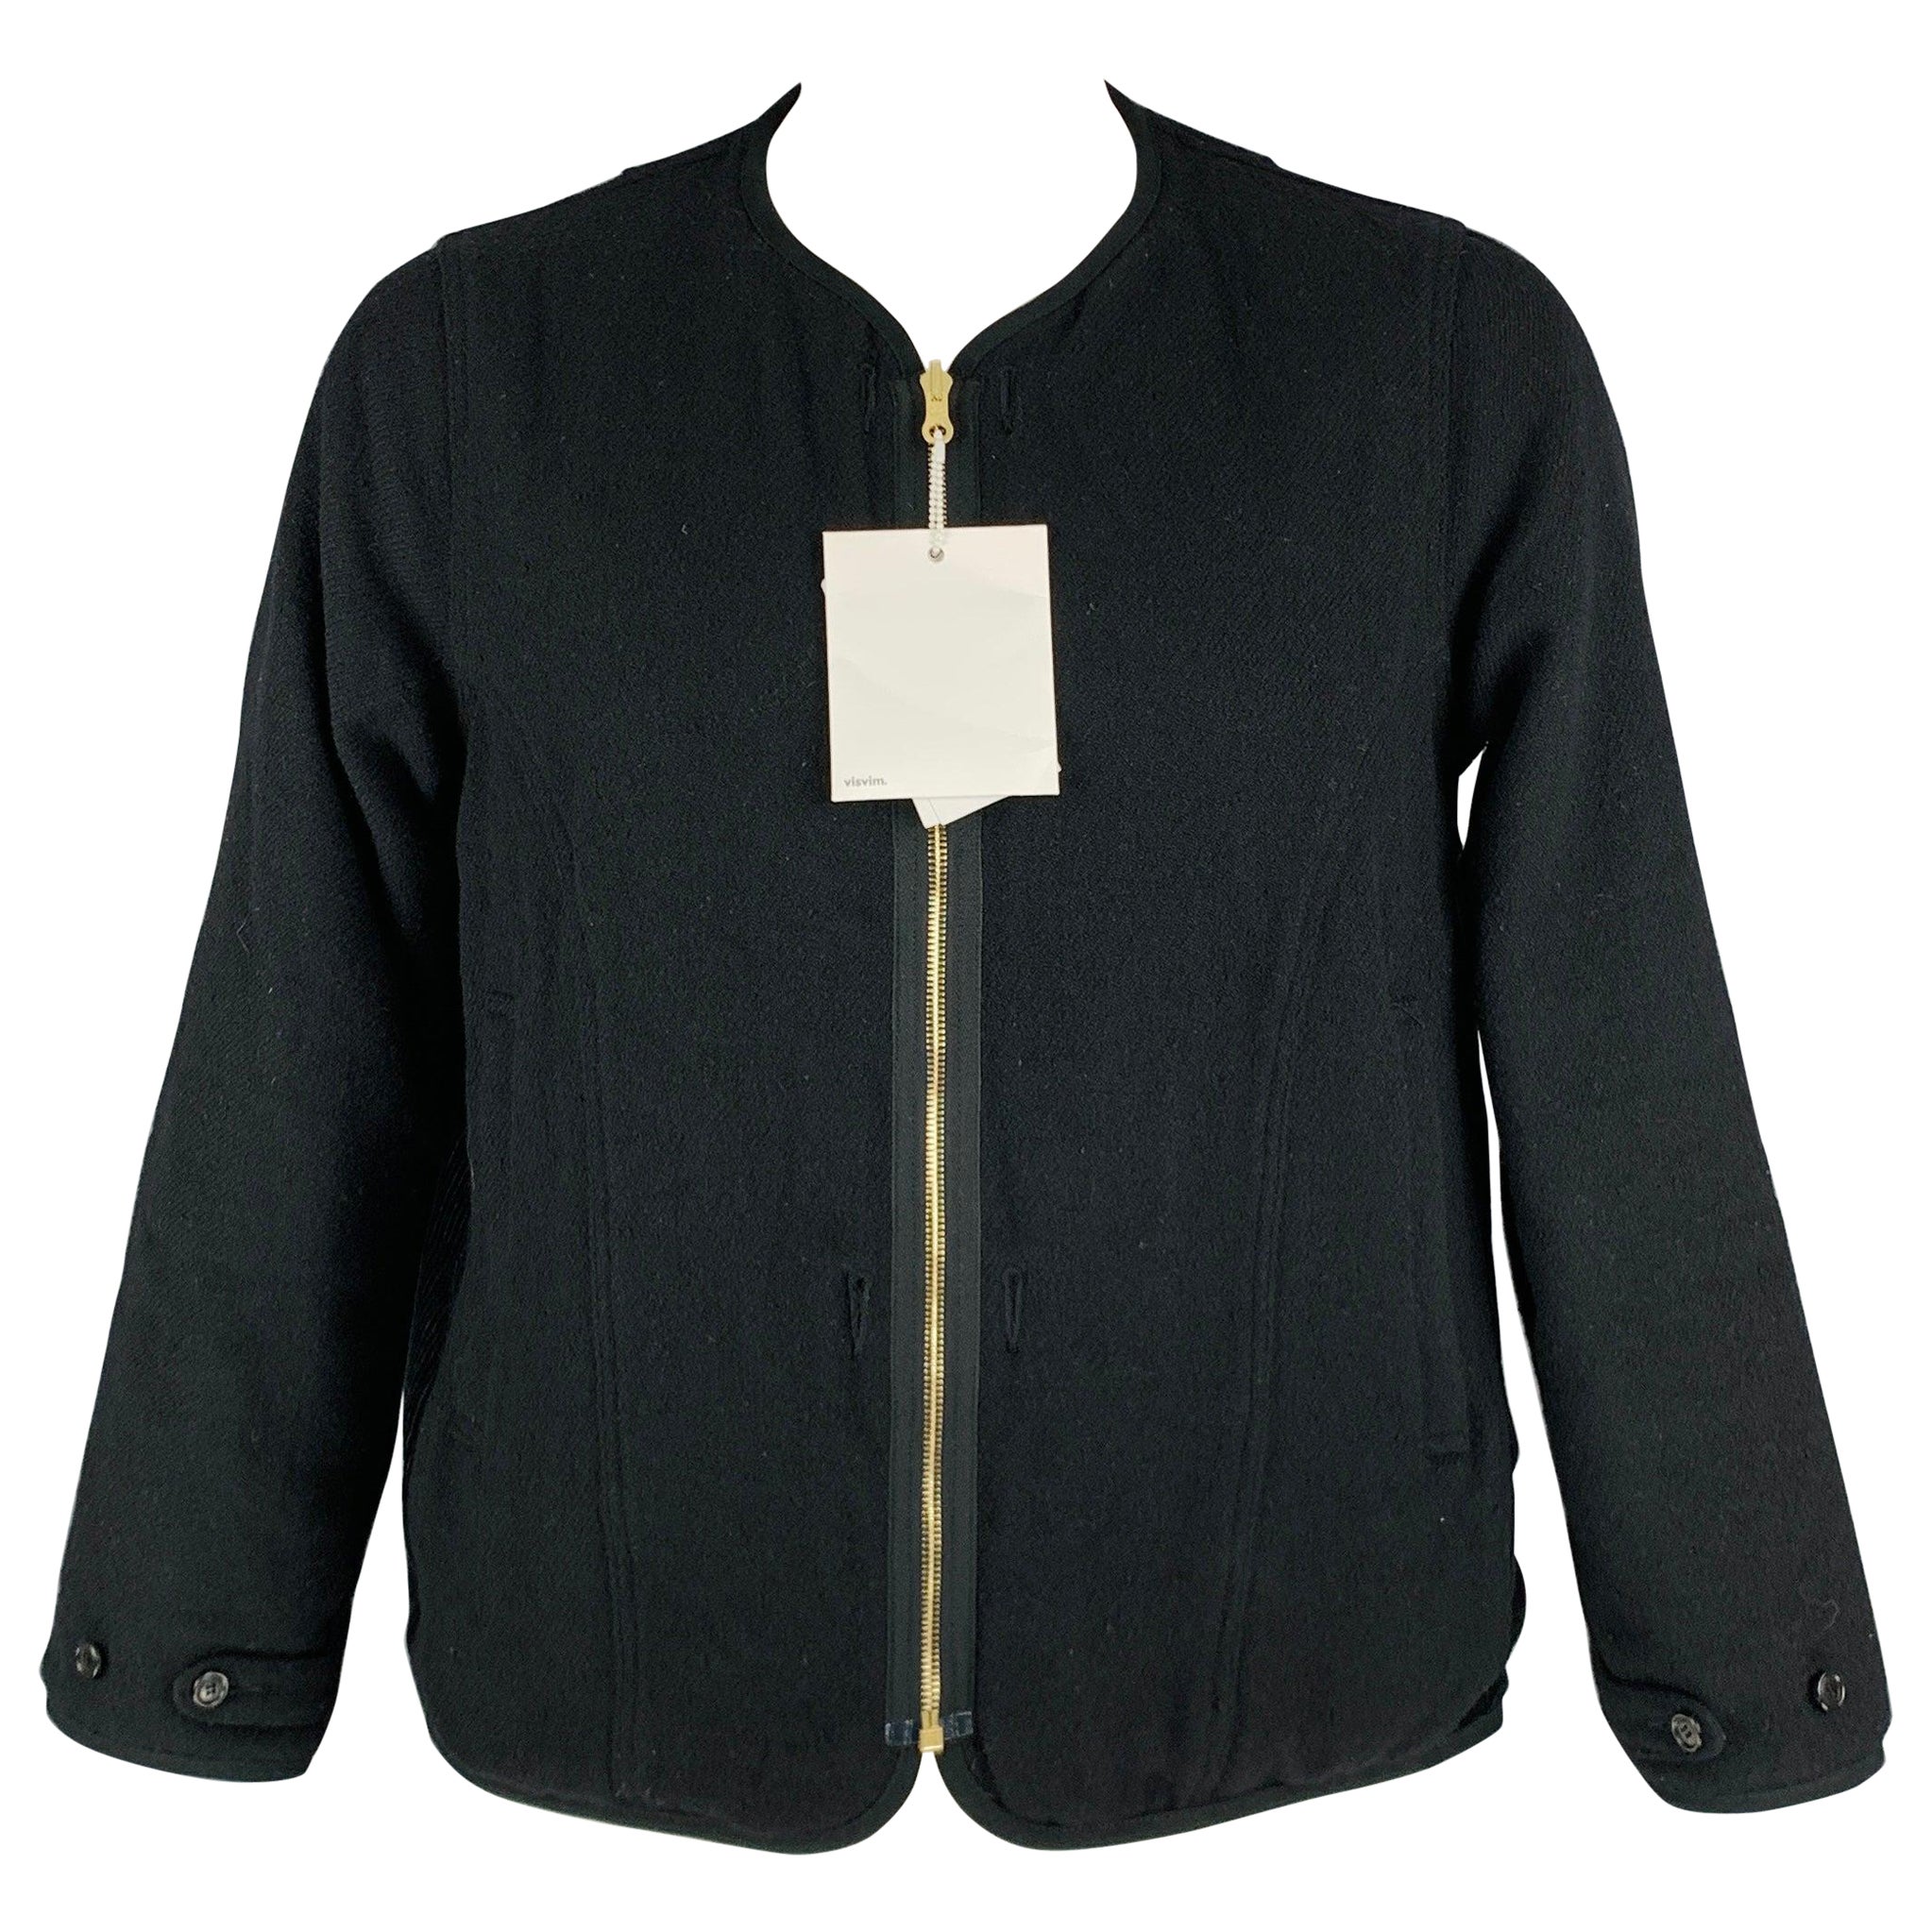 VISVIM -Wawona Down Jacket -Size L Black Beige Tweed Wool Linen Zip Up Coat en vente